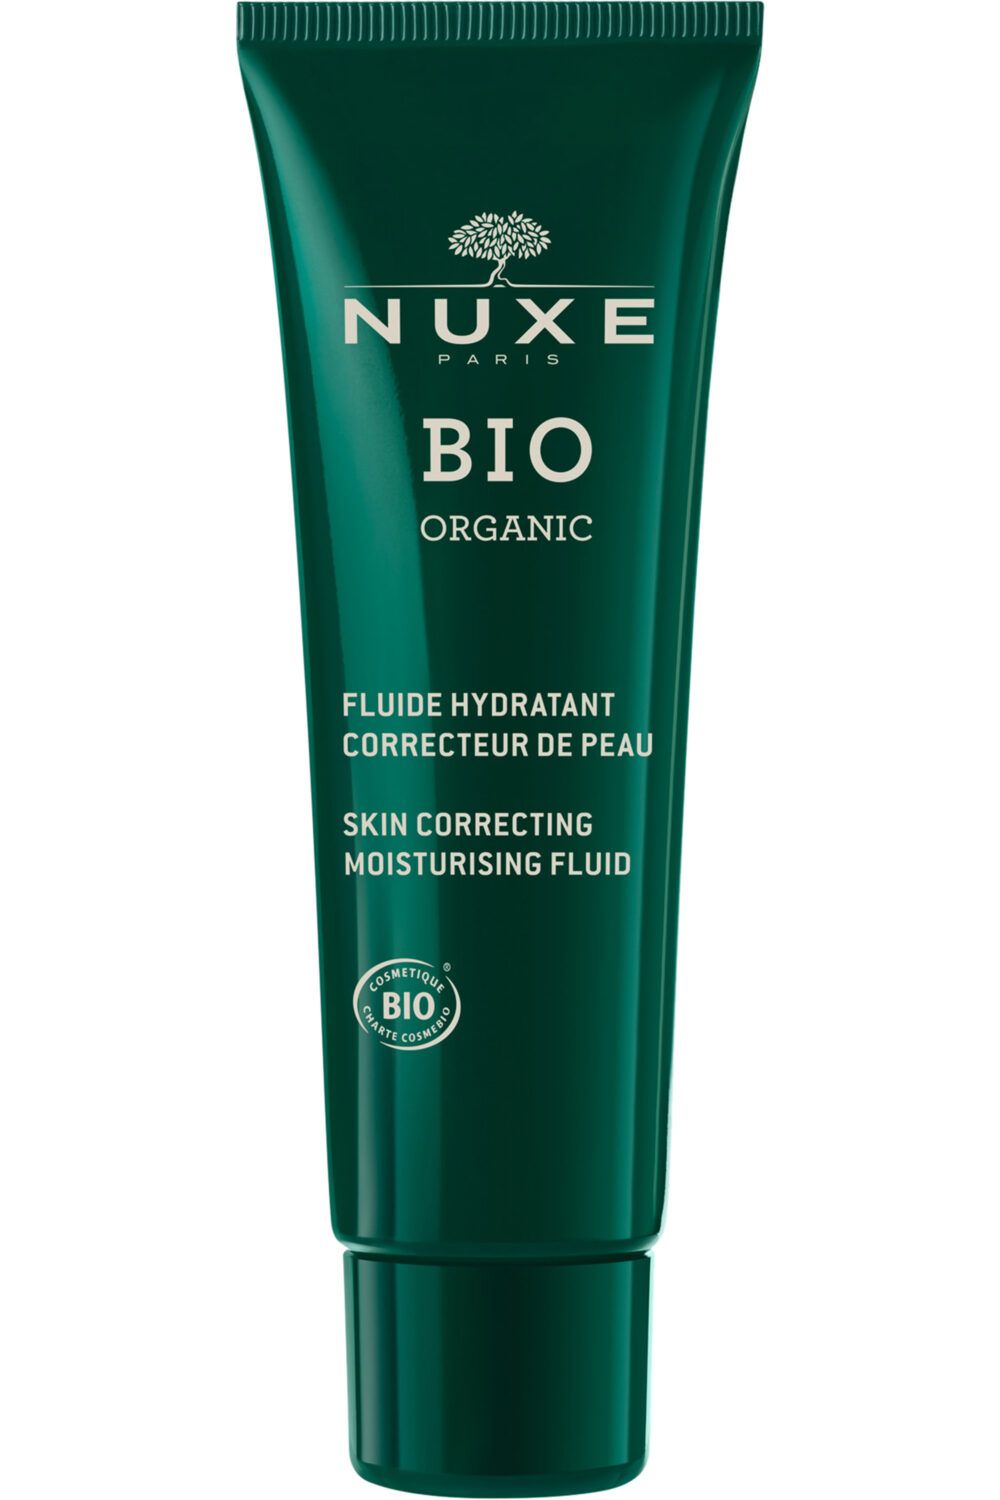 Nuxe - Fluide hydratant correcteur de peau Nuxe Bio